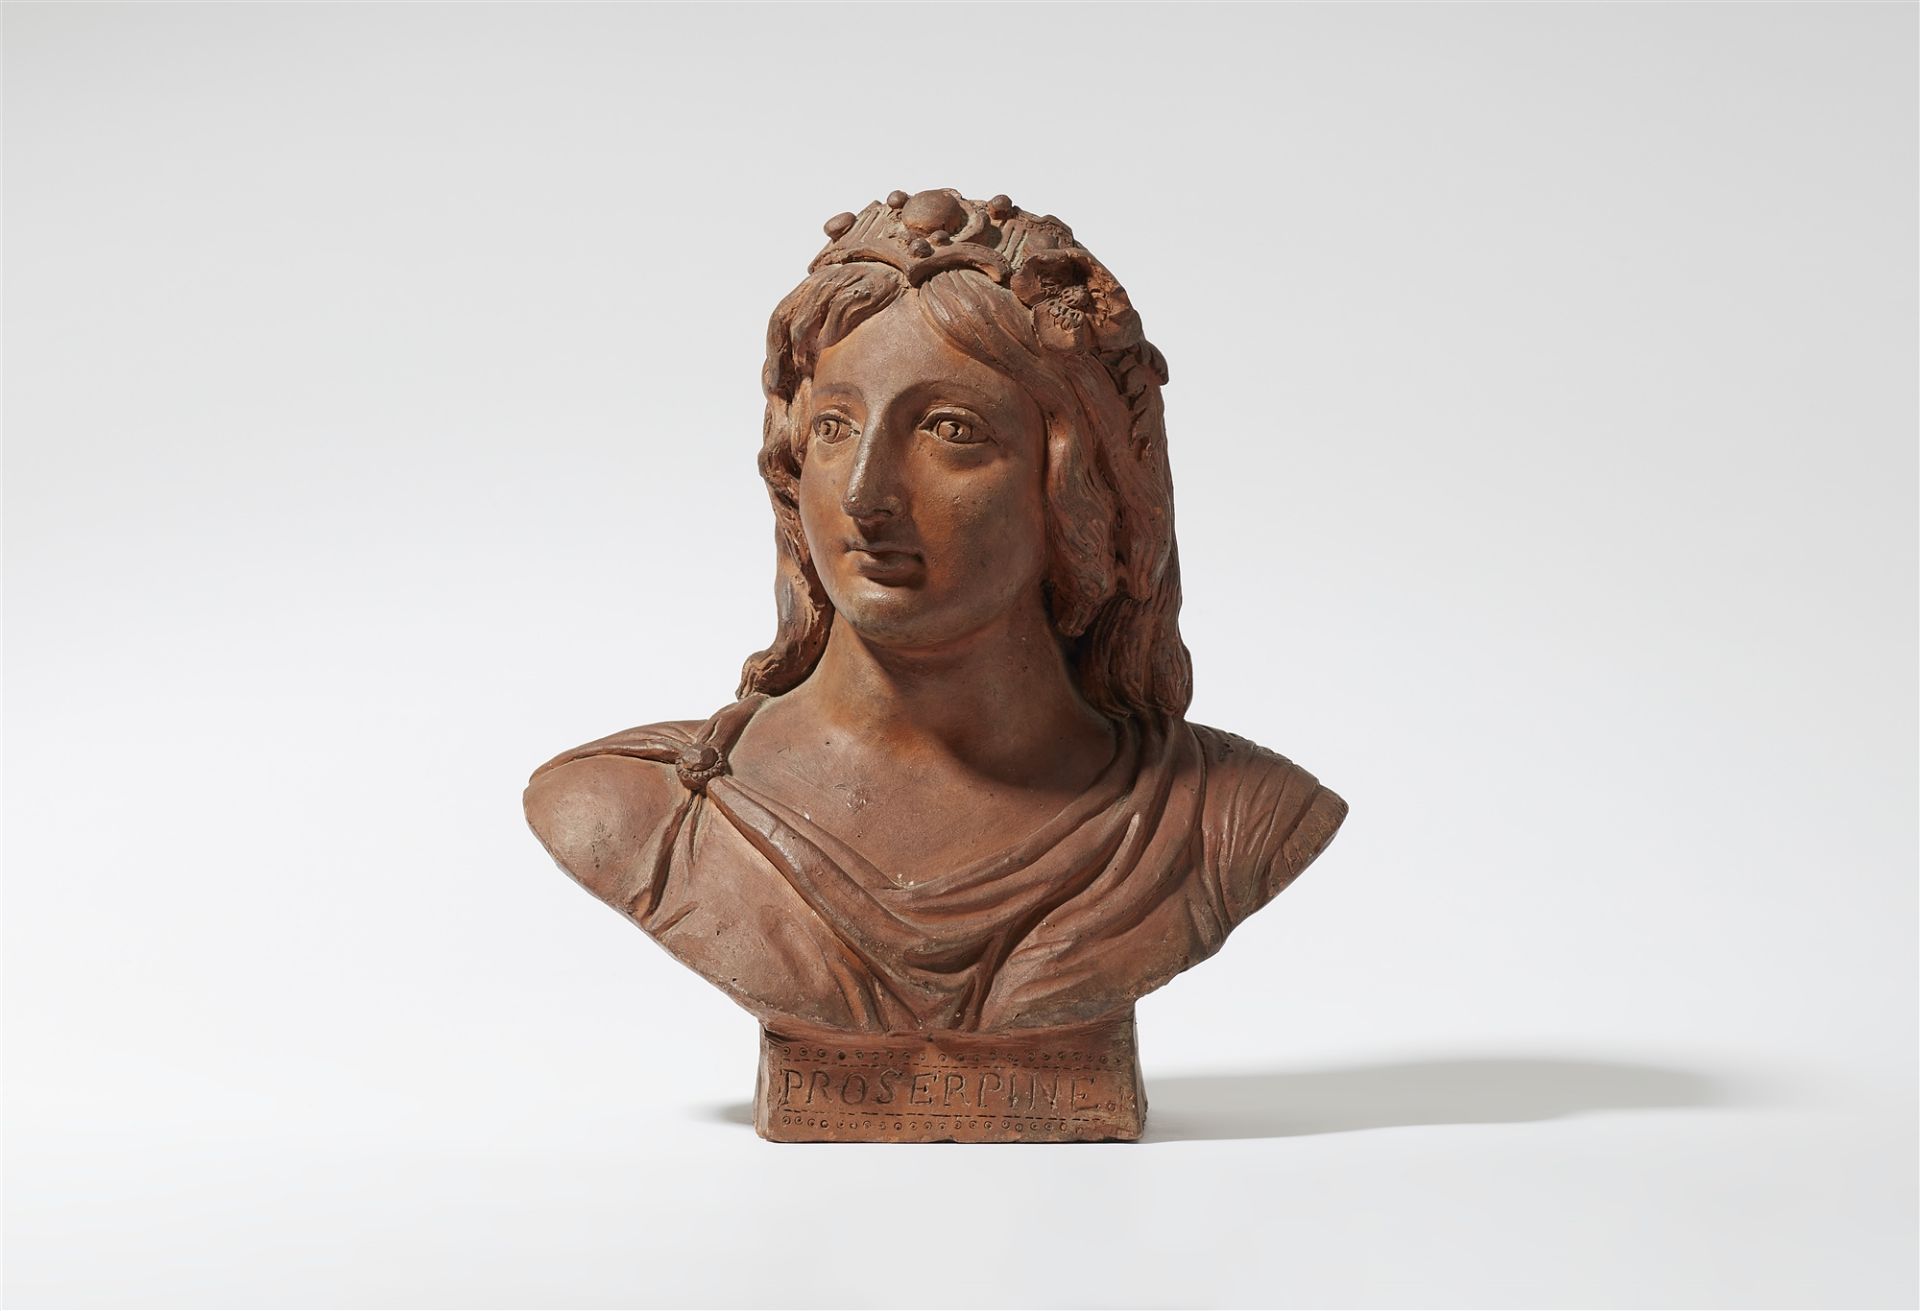 A terracotta bust of Proserpina